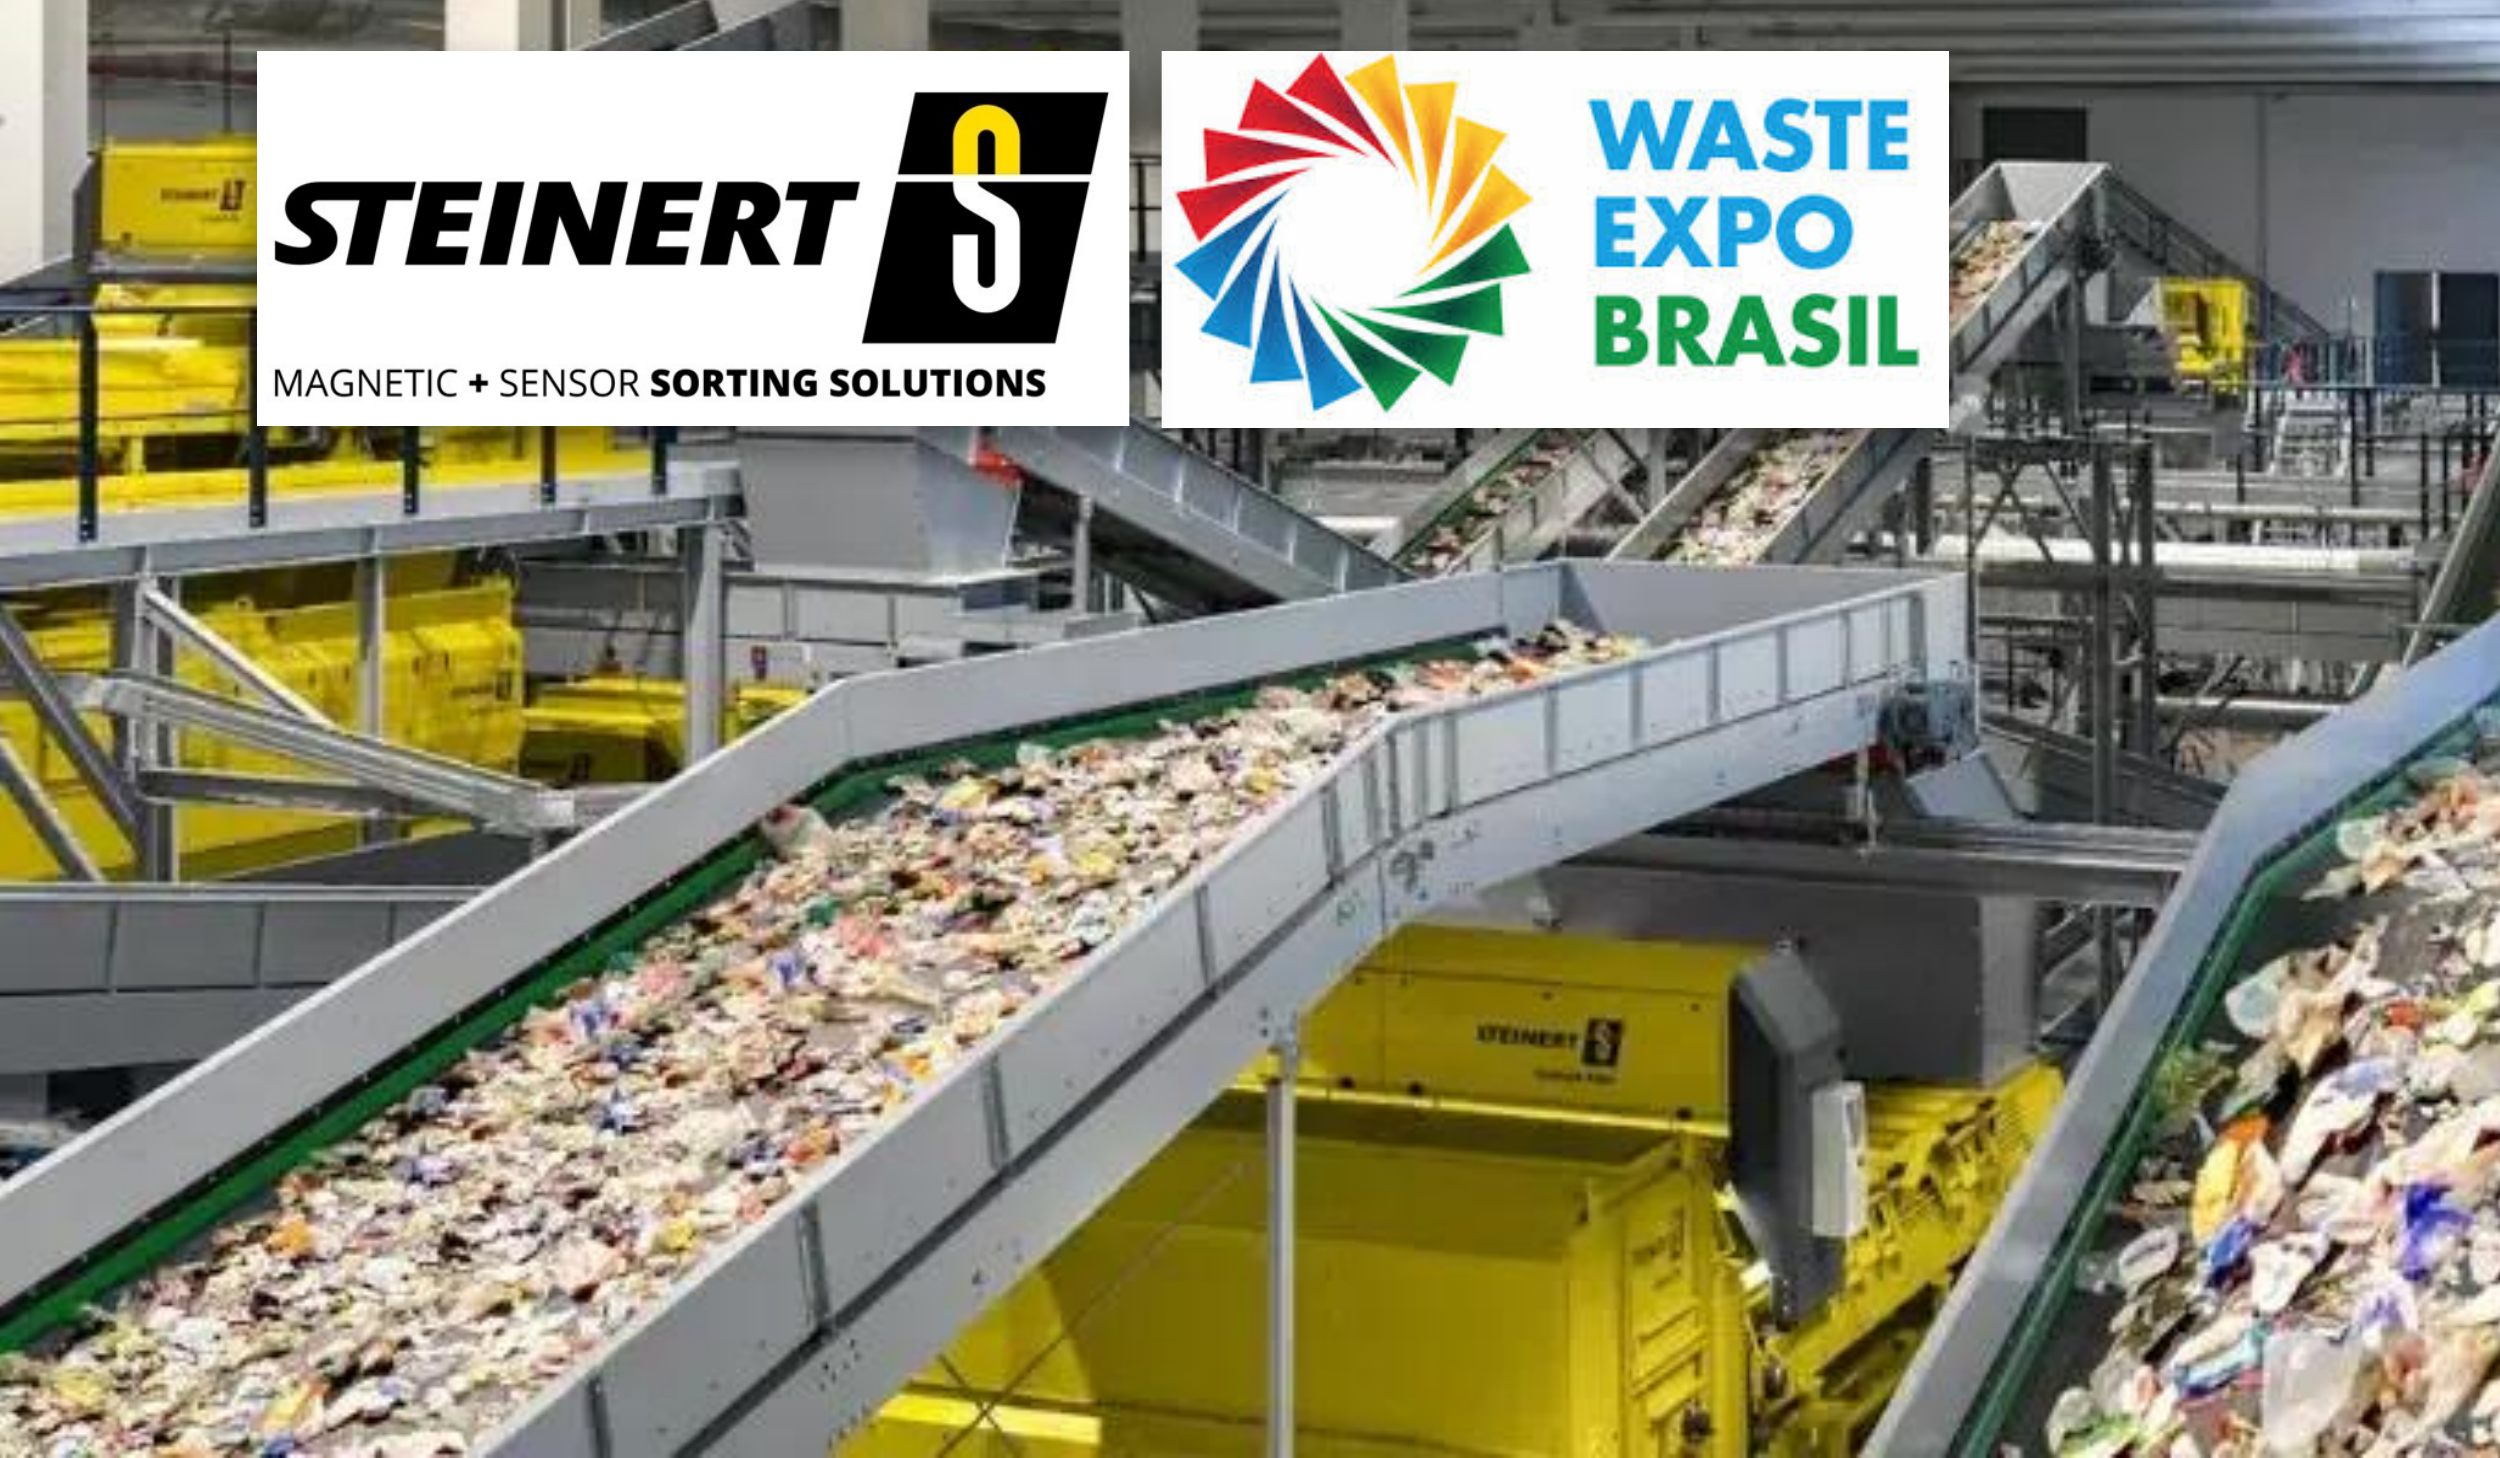 STEINERT apresenta tecnologias avançadas de separação por sensores para Resíduos Sólidos Urbanos na Waste Expo Brasil 2023